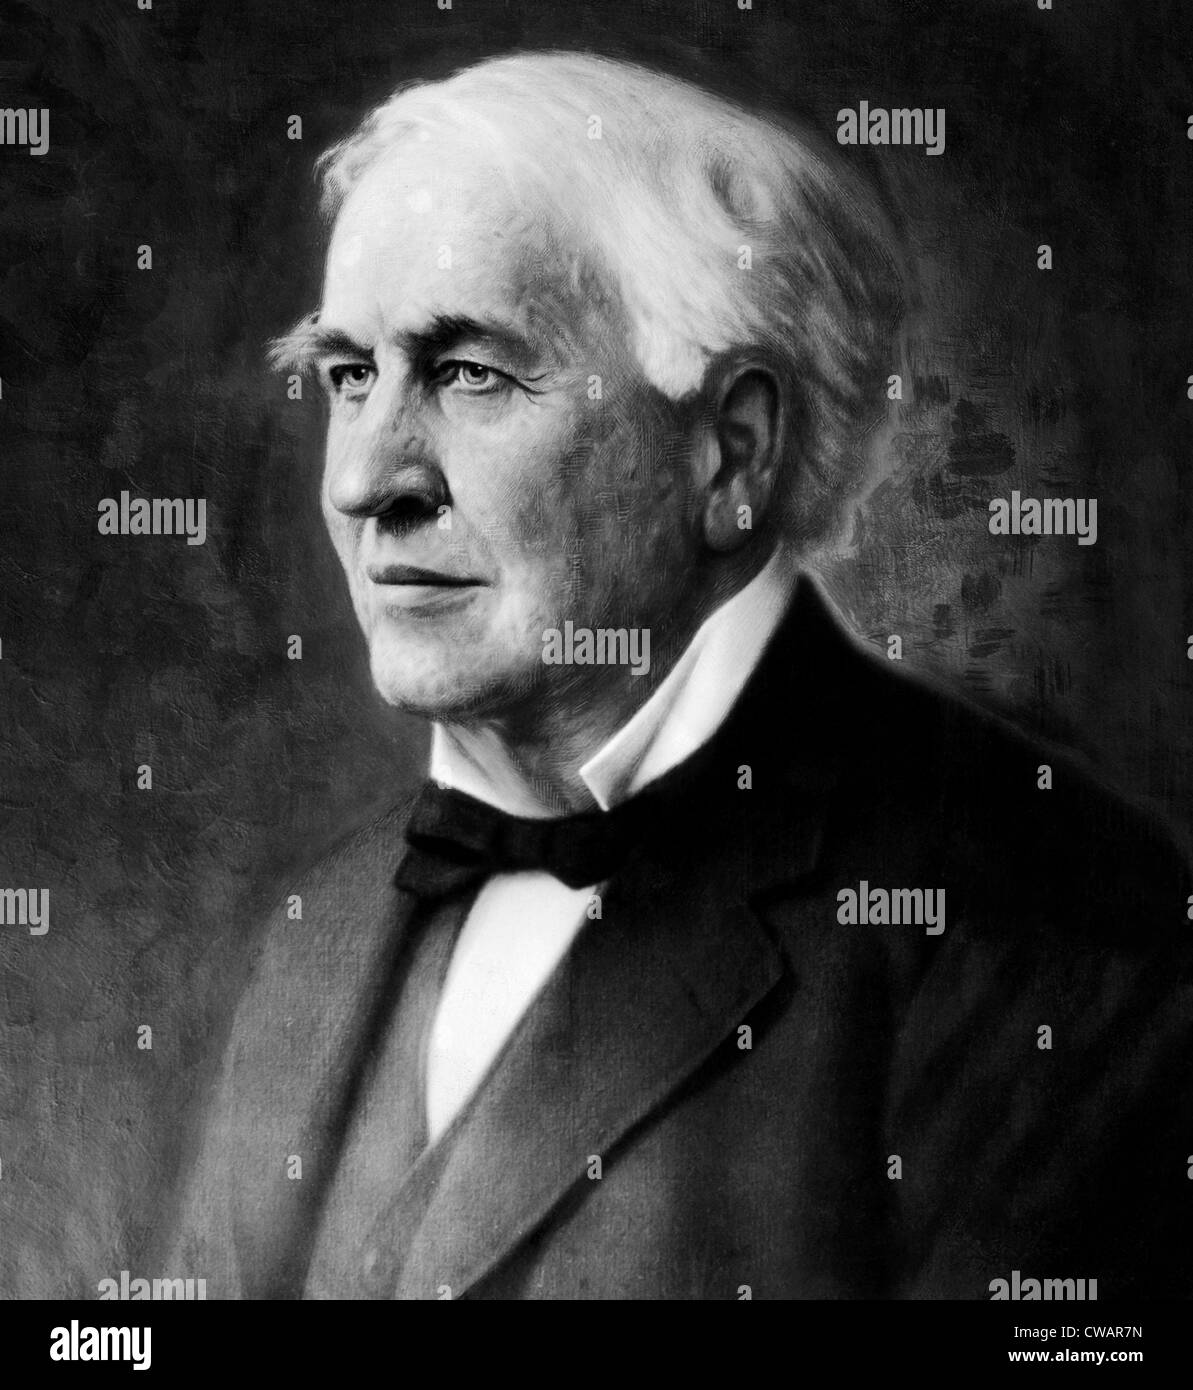 Ein Porträt von Thomas Edison, 1847-1931. Mit freundlicher Genehmigung CSU Archive/Everett Collection. Stockfoto